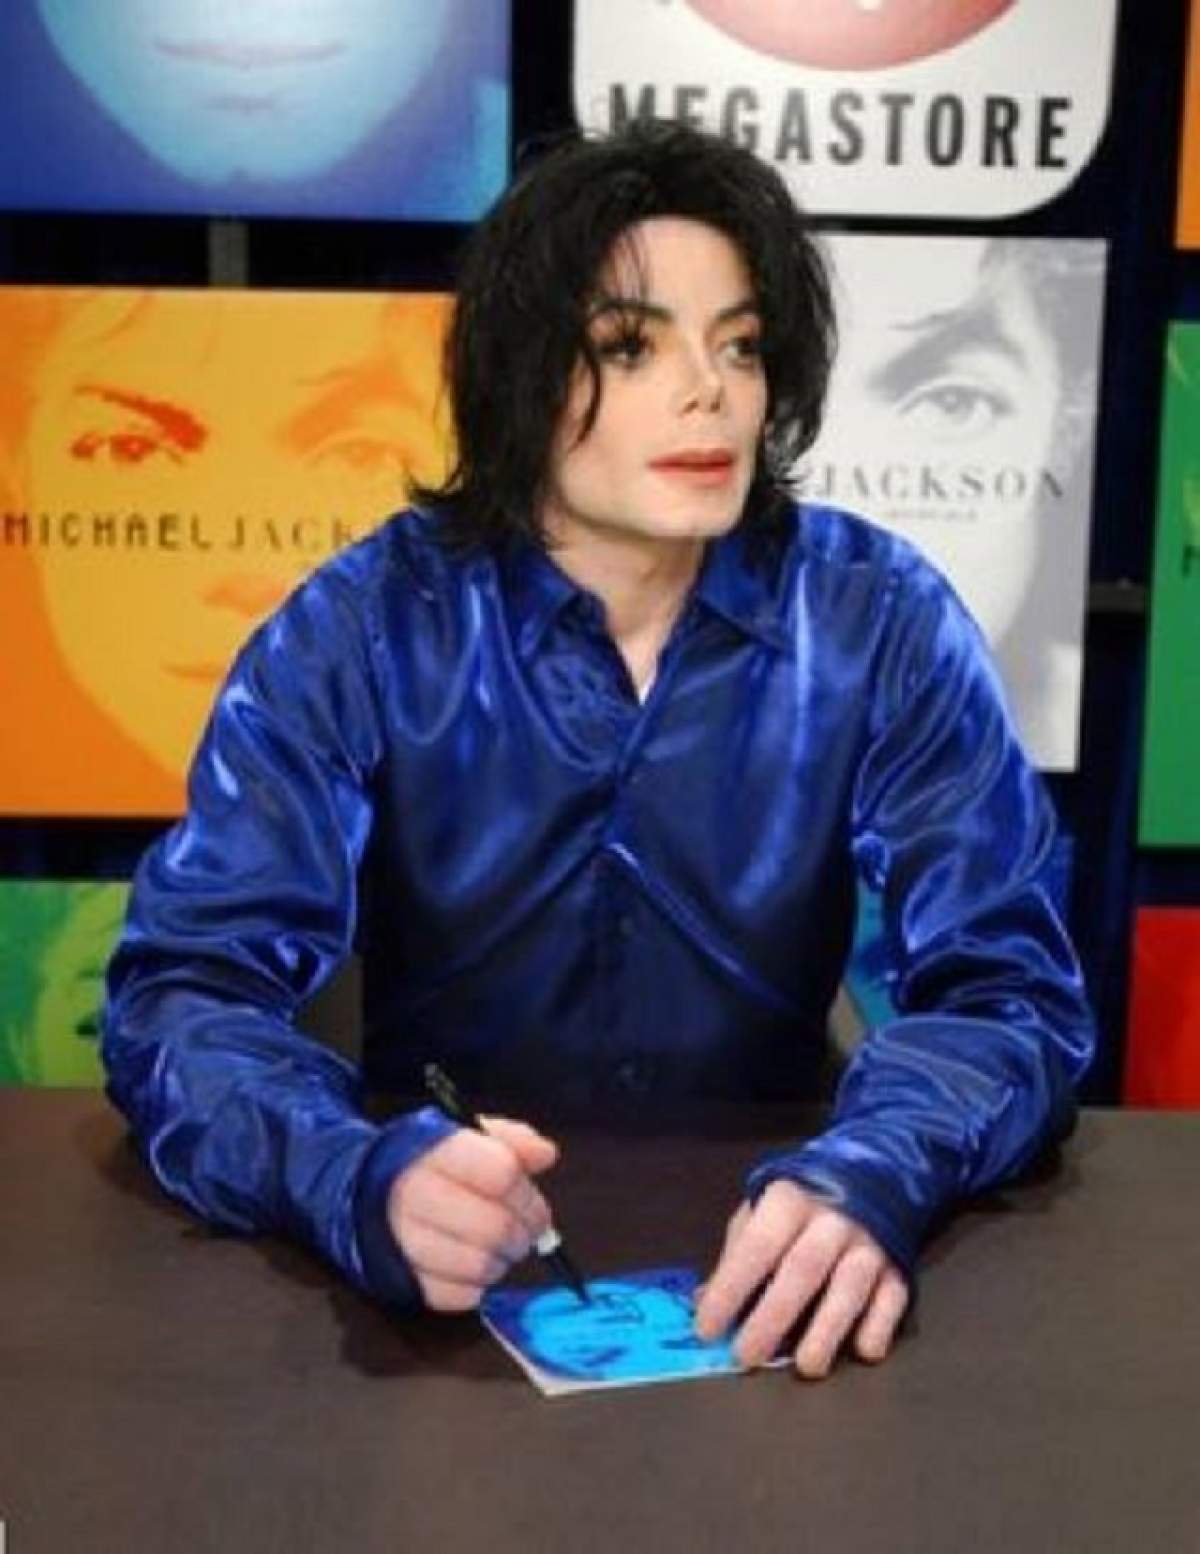 Secretele înfiorătoare din viața lui Michael Jackson au ieșit la iveală. Poliția a descins în casa sa și a găsit lucruri revoltătoare